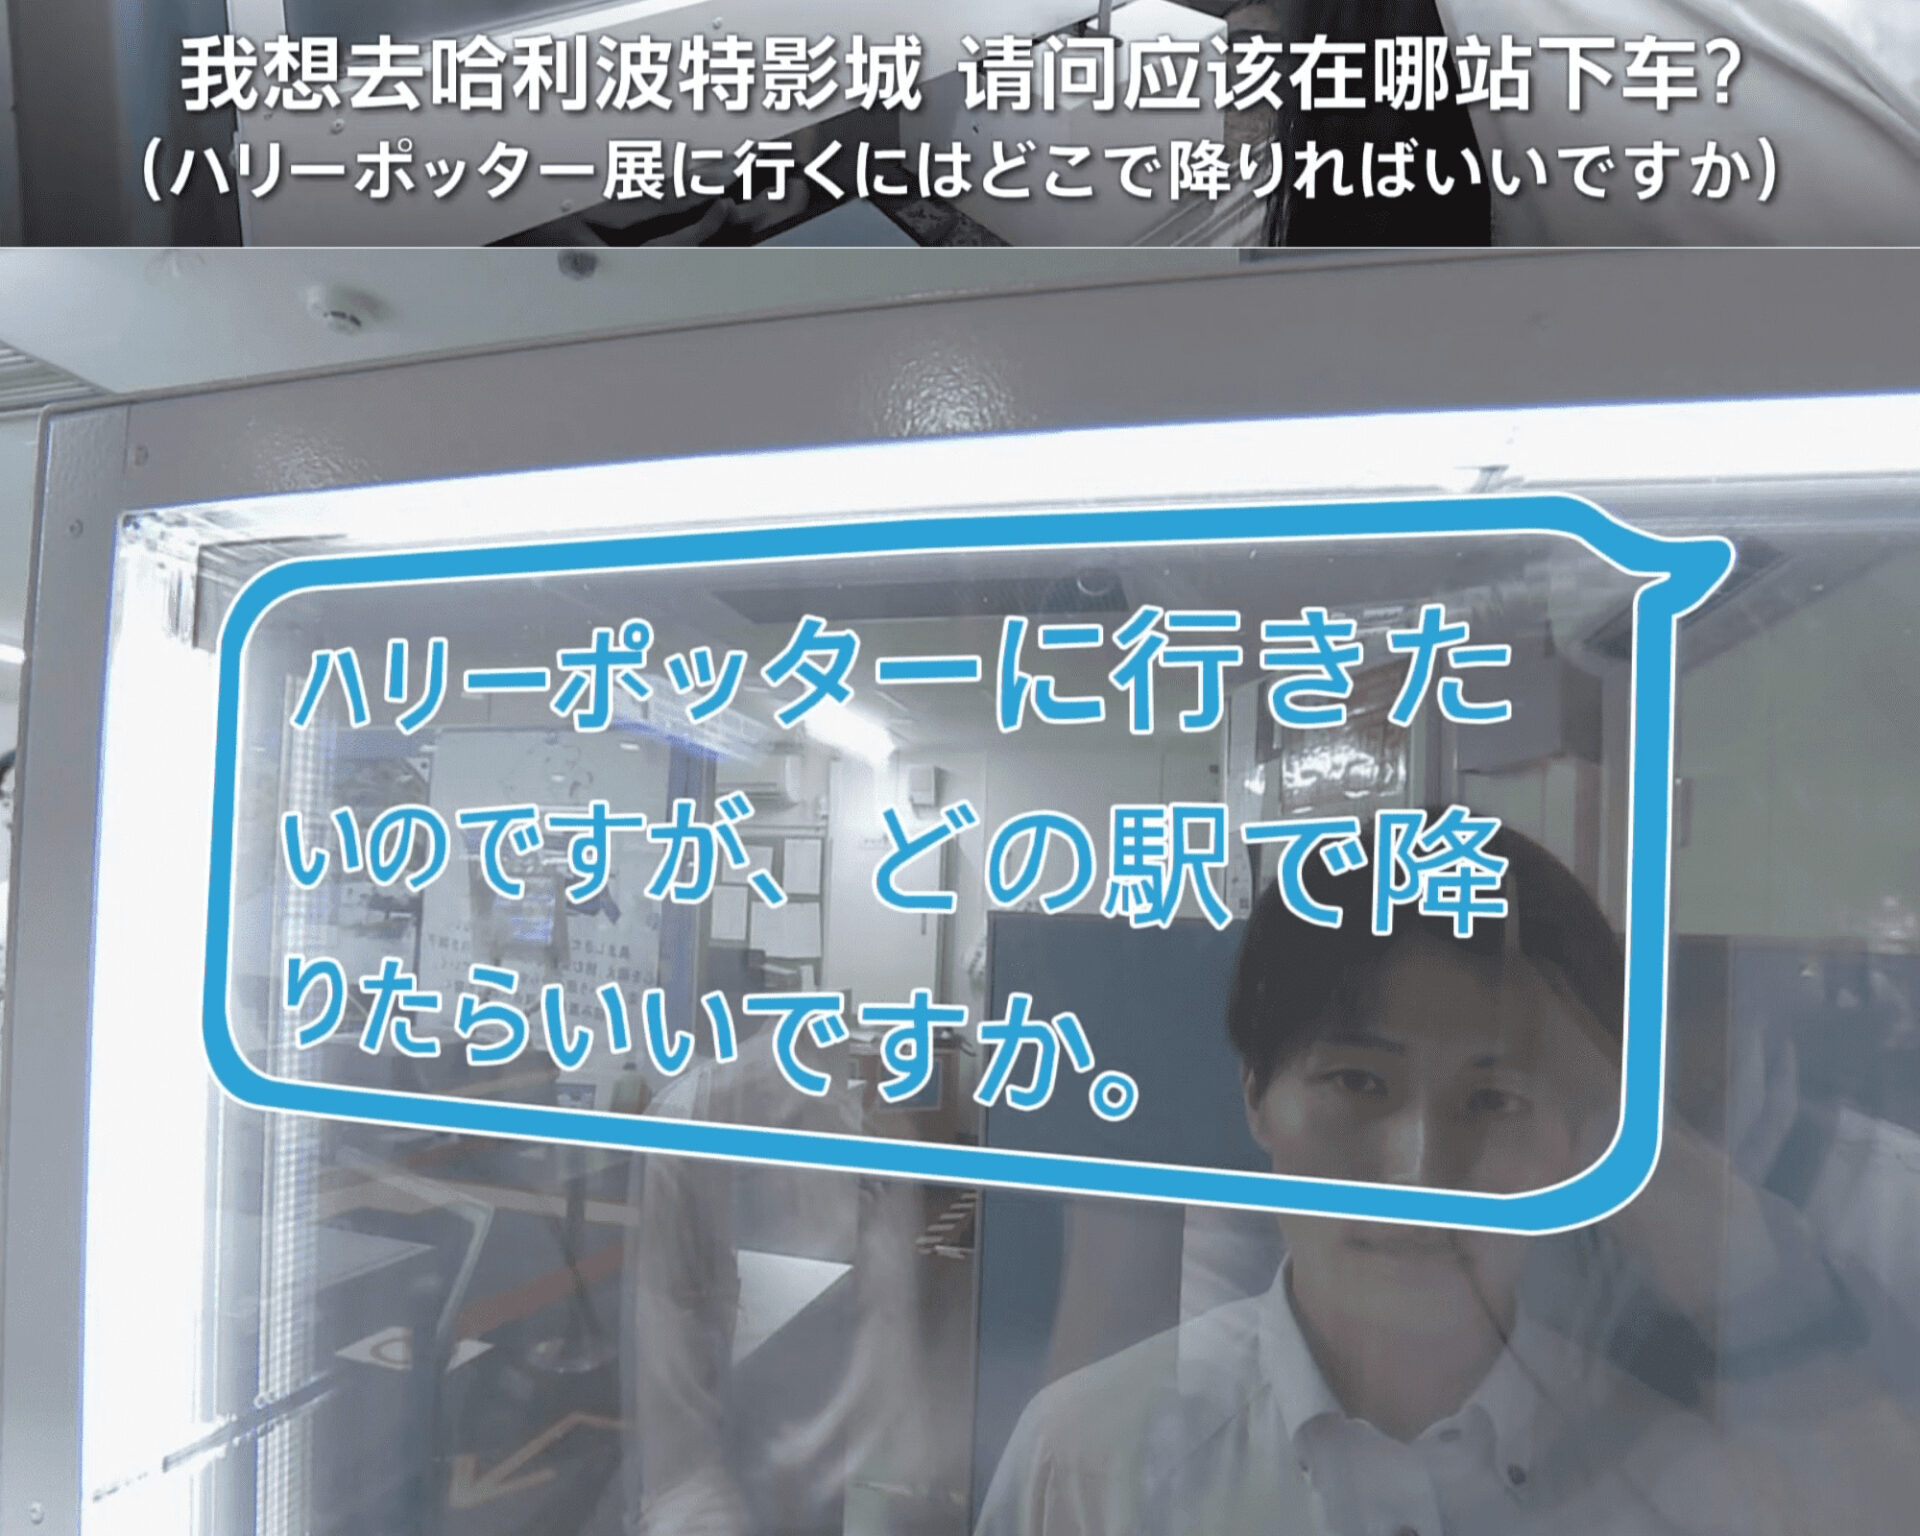 日本西武鐵道即將推出翻譯透明顯示螢幕，消除外國旅客與車站員工的語言障礙 - 電腦王阿達